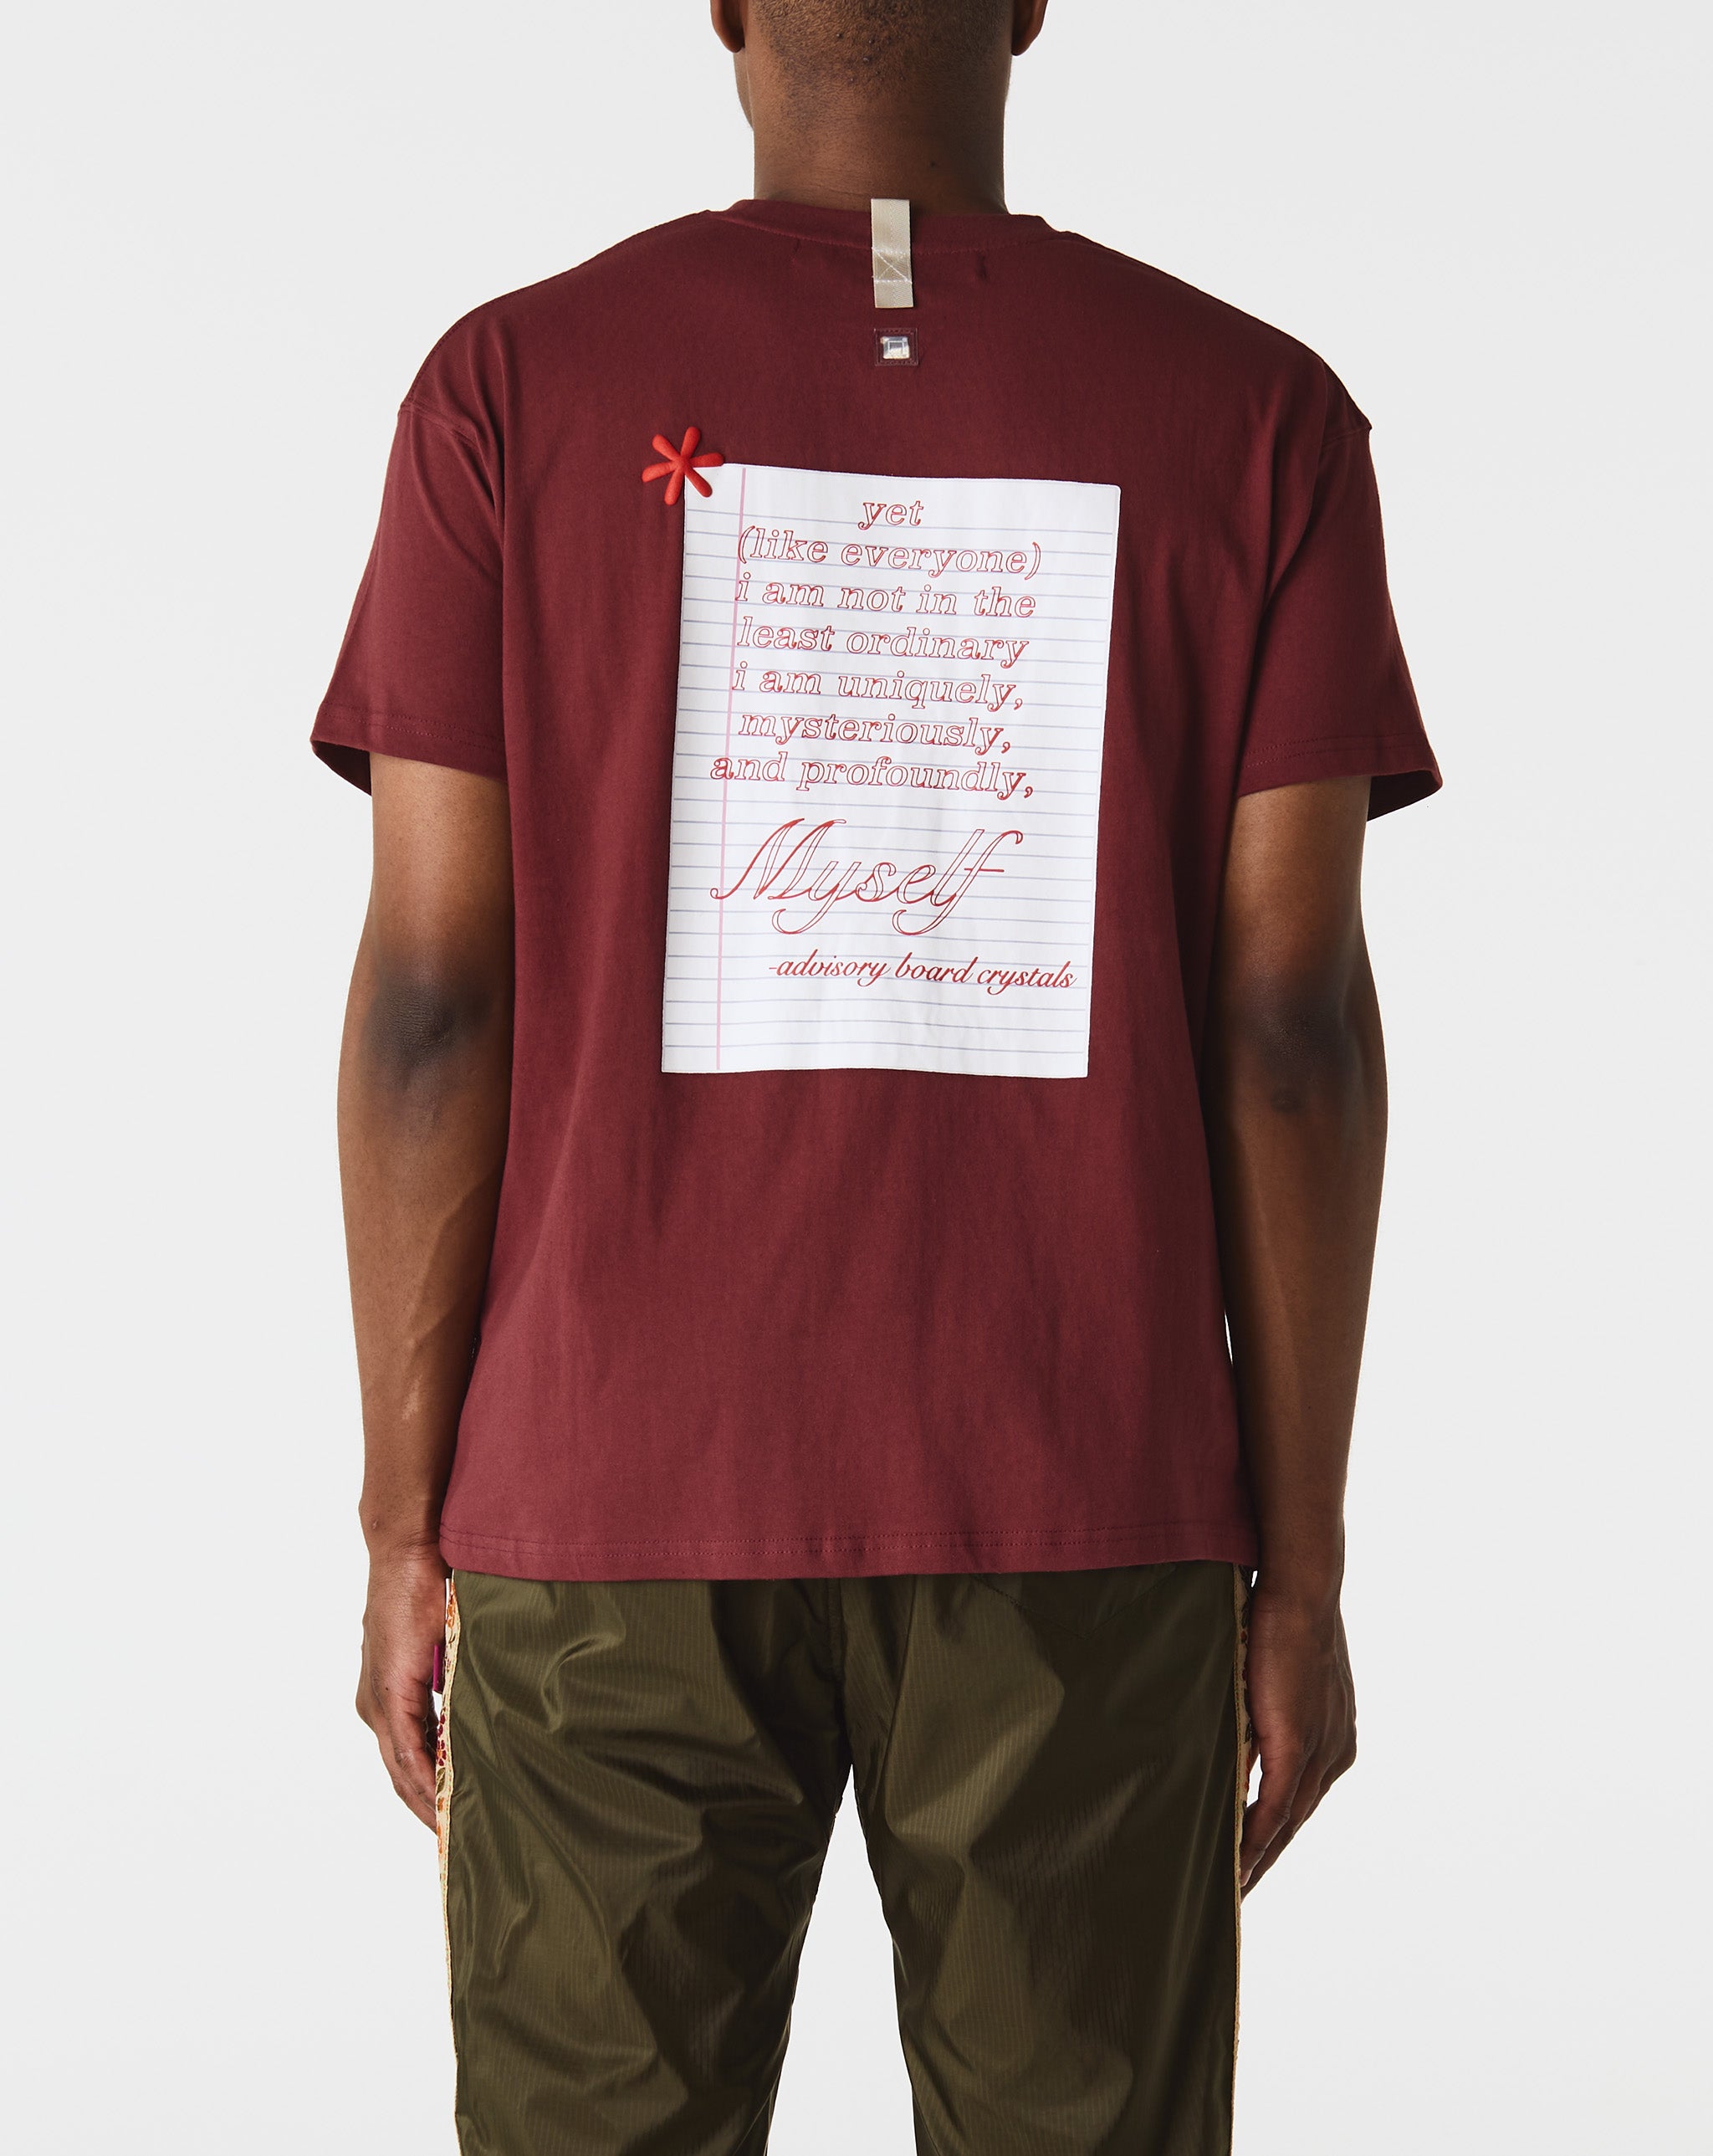 Herd Mentality T-Shirt I Am Ordinary T-Shirt  - Cheap Erlebniswelt-fliegenfischen Jordan outlet